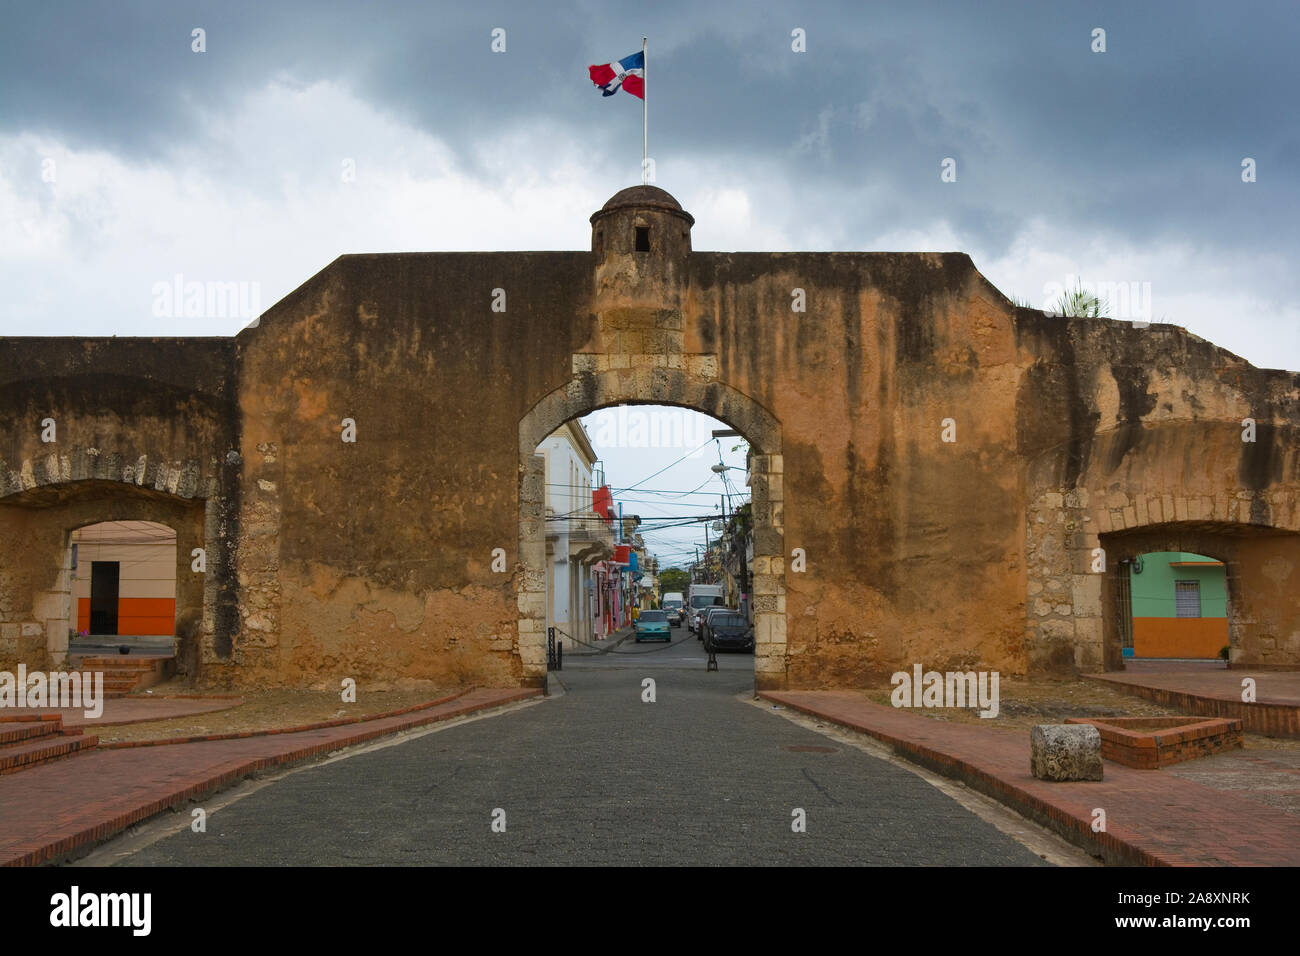 Avis de Puerta de la Misericordia (la porte de la miséricorde) - La première porte de la ville coloniale de Saint-Domingue, République Dominicaine Banque D'Images